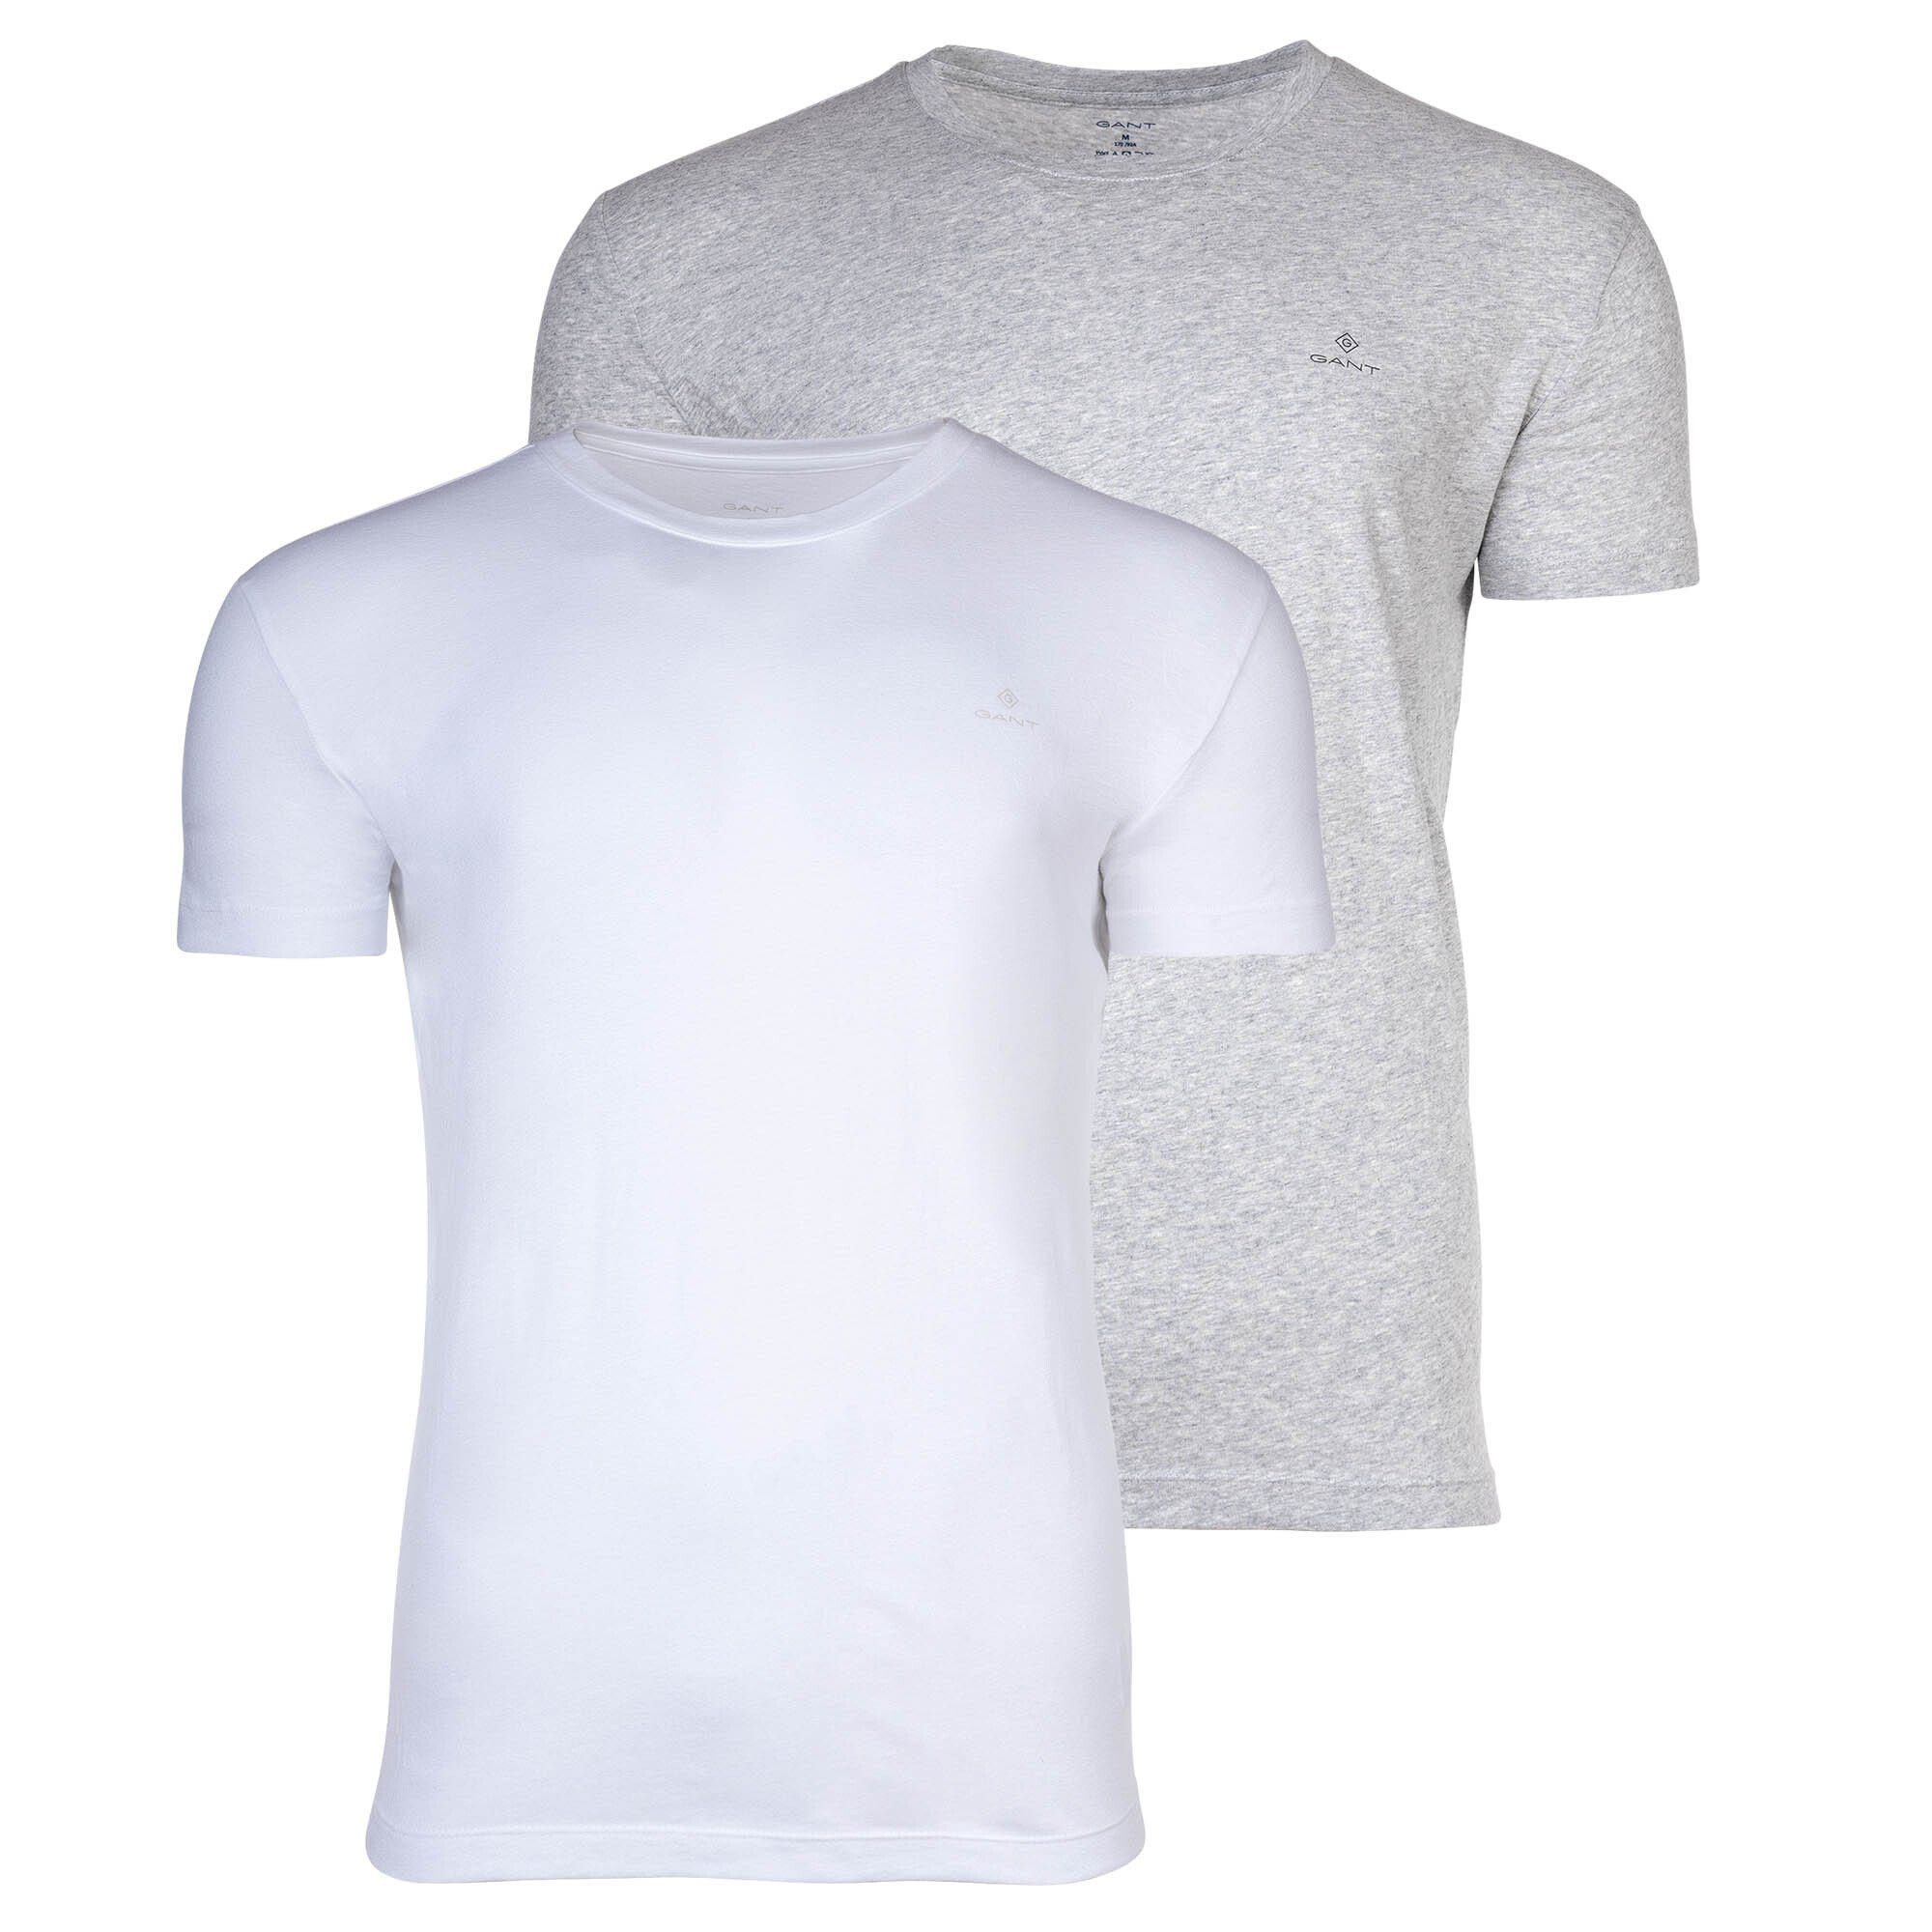 Gant T-Shirt Herren T-Shirt, 2er Pack - Rundhals, Crew Neck Grau/Weiß